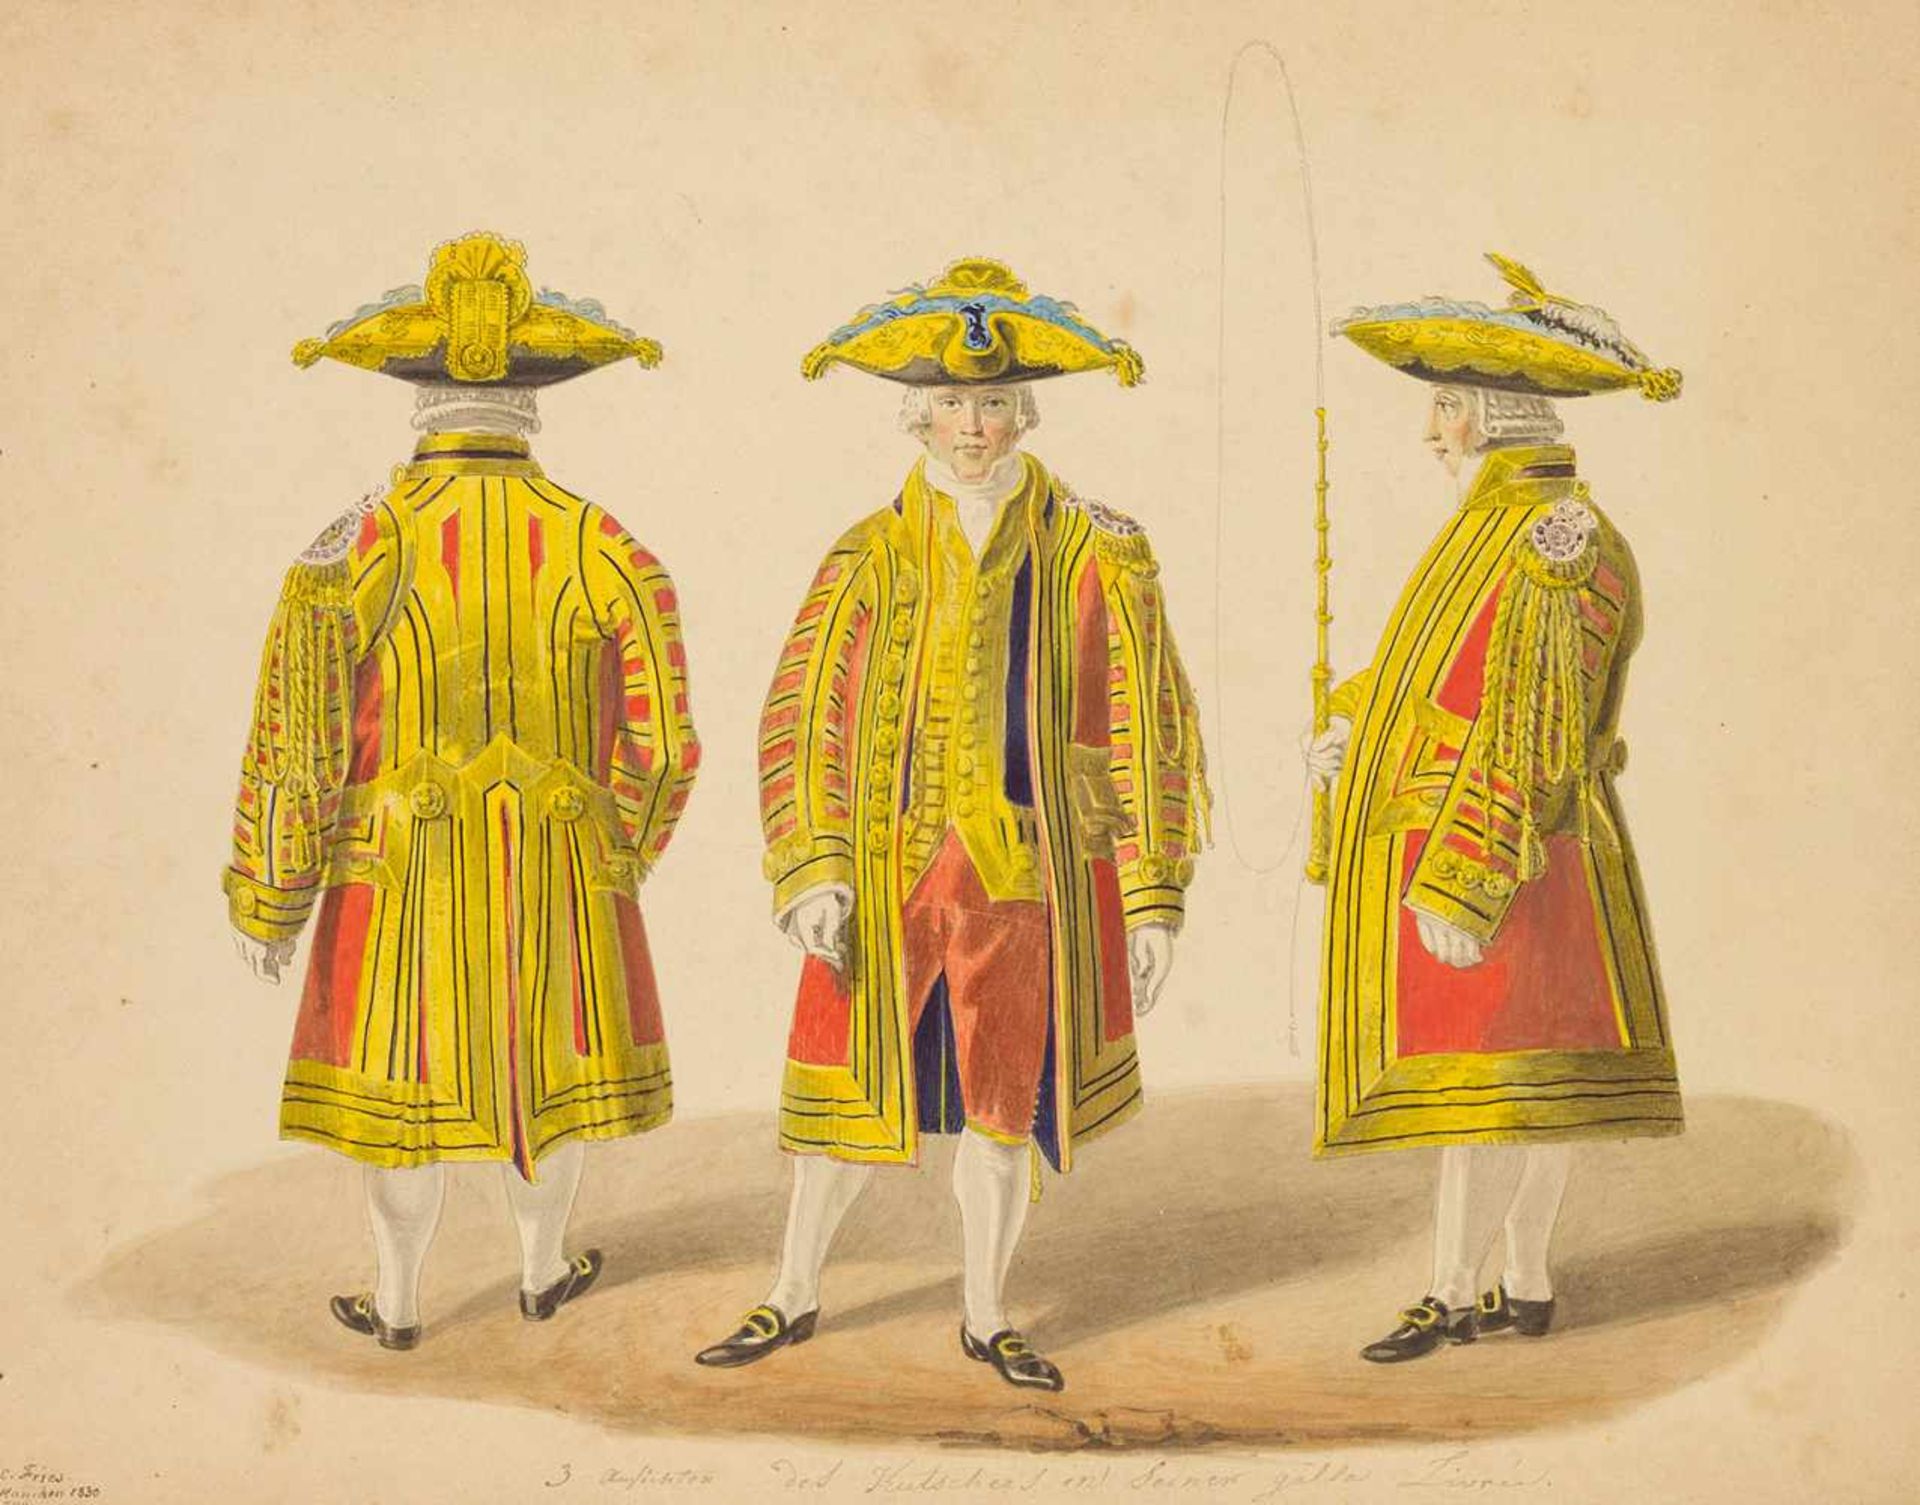 Kostüm. – Christoph Fries (1788-1857). Livrée, Hofstaat des Kutschers. Zeichnung. Gouache auf